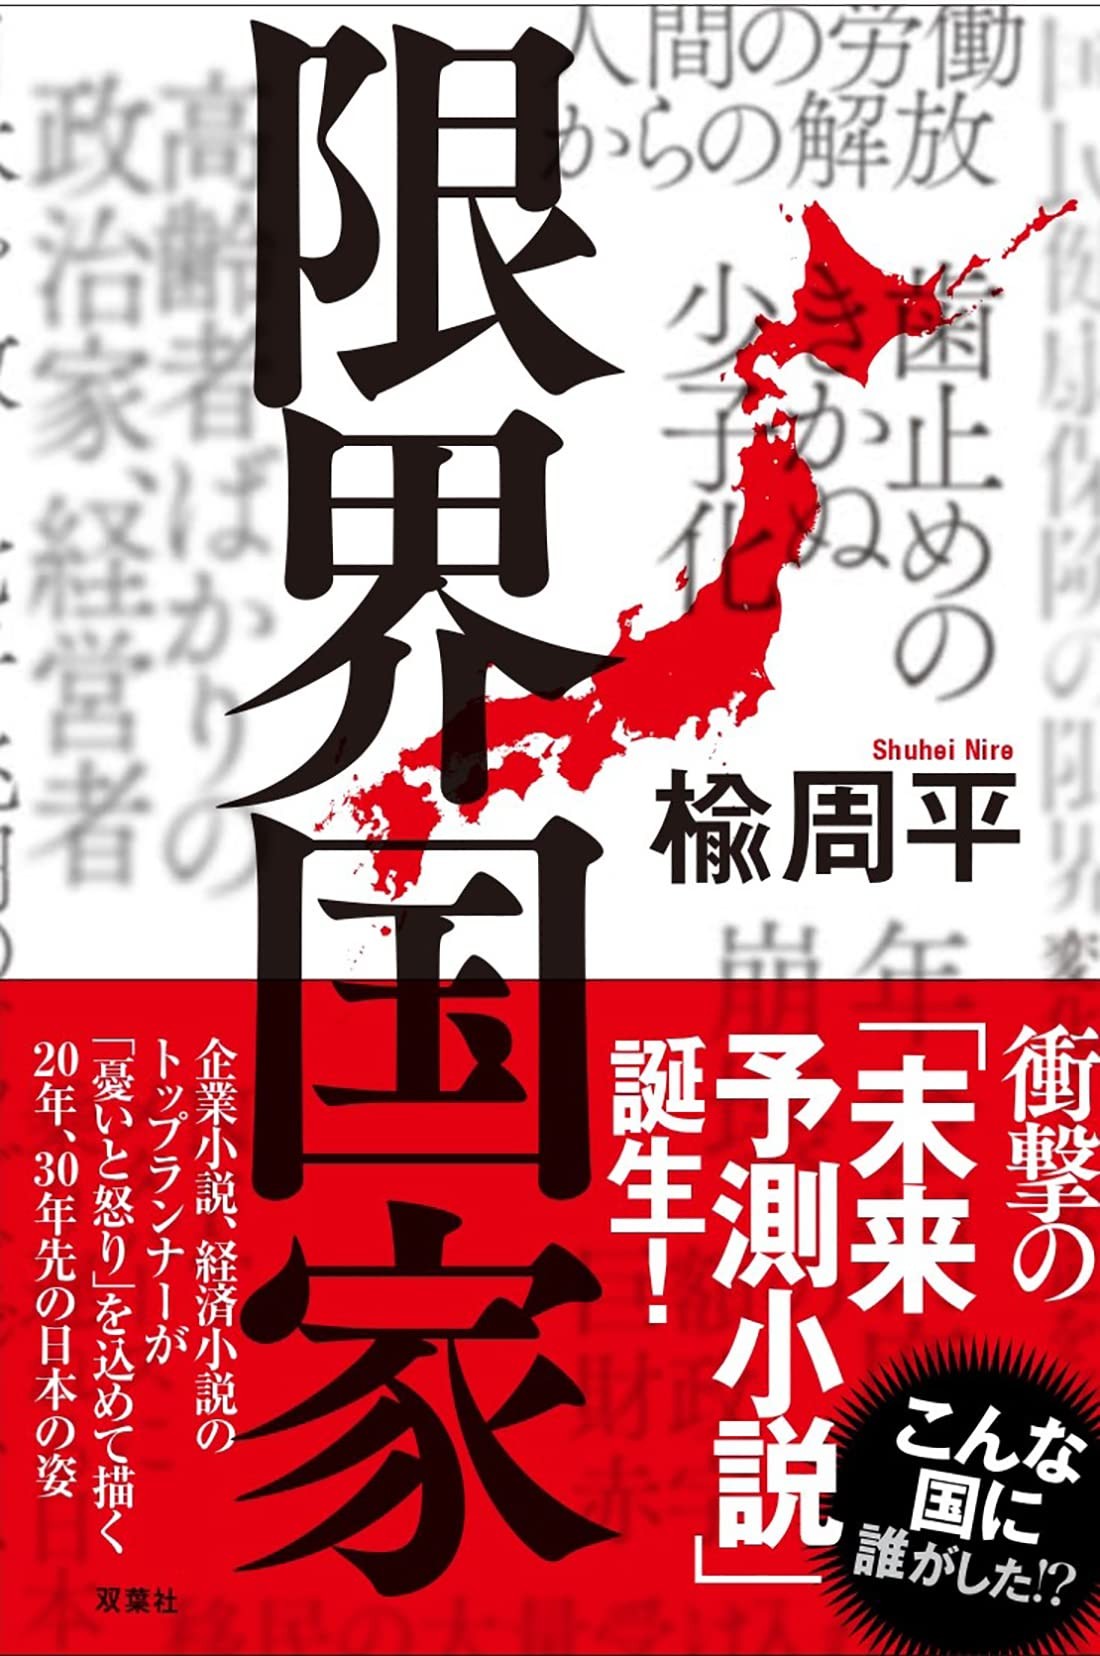 30年後、日本は終焉する!?　経済小説のトップランナーが怒りと憂いを込めて描き出す衝撃の「未来予想小説」　ダ・ヴィンチWeb